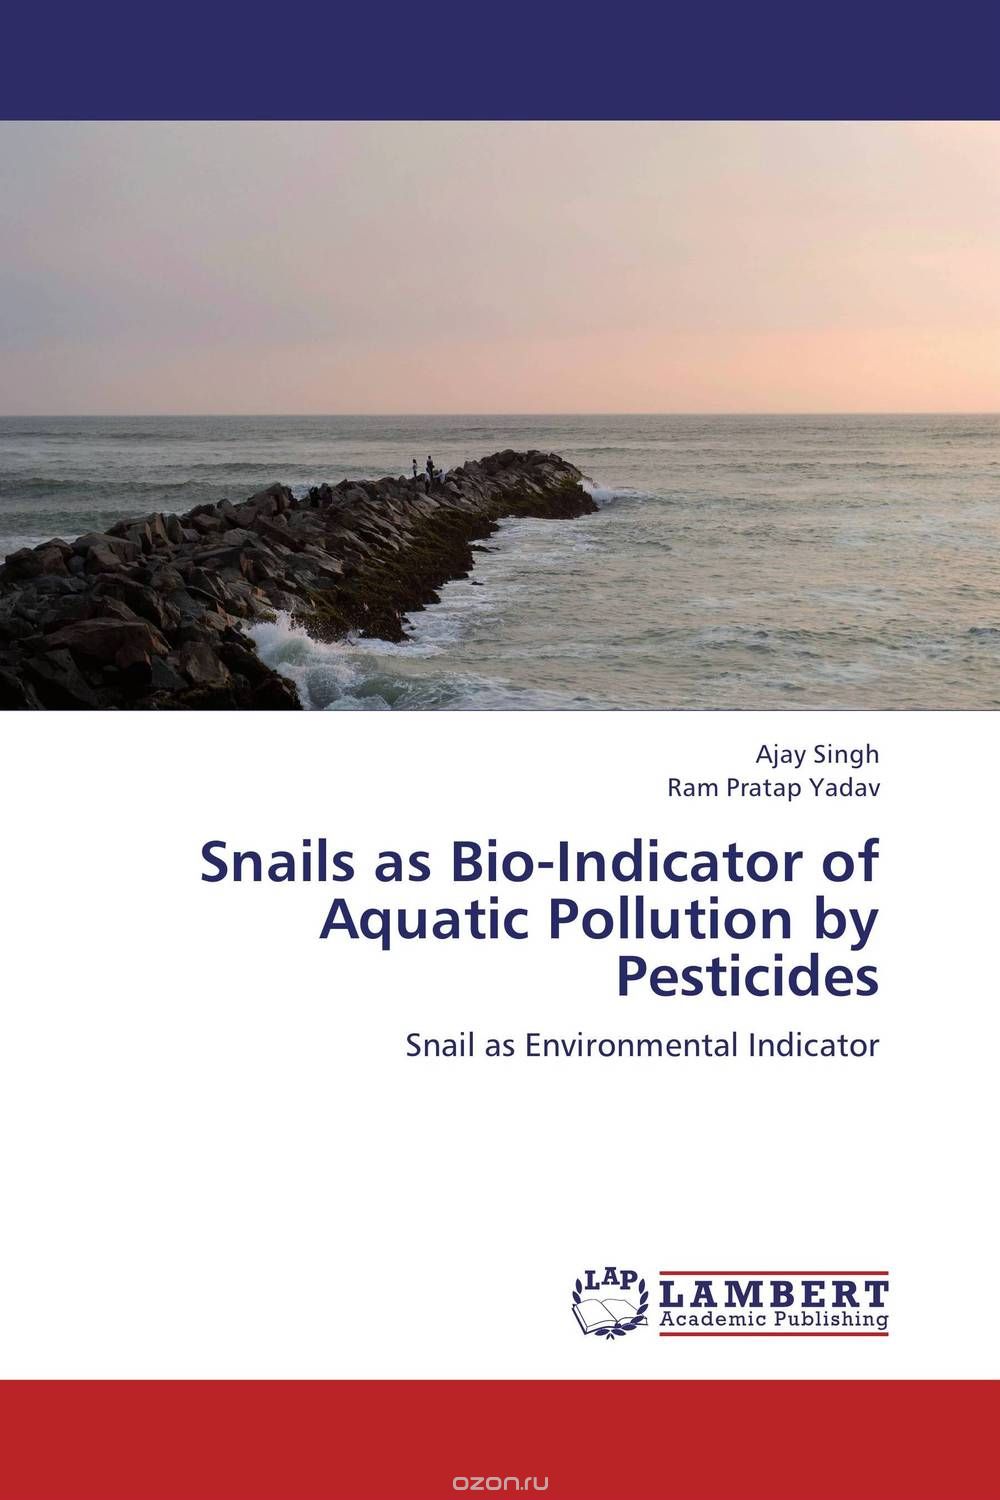 Скачать книгу "Snails as Bio-Indicator of Aquatic Pollution by Pesticides"